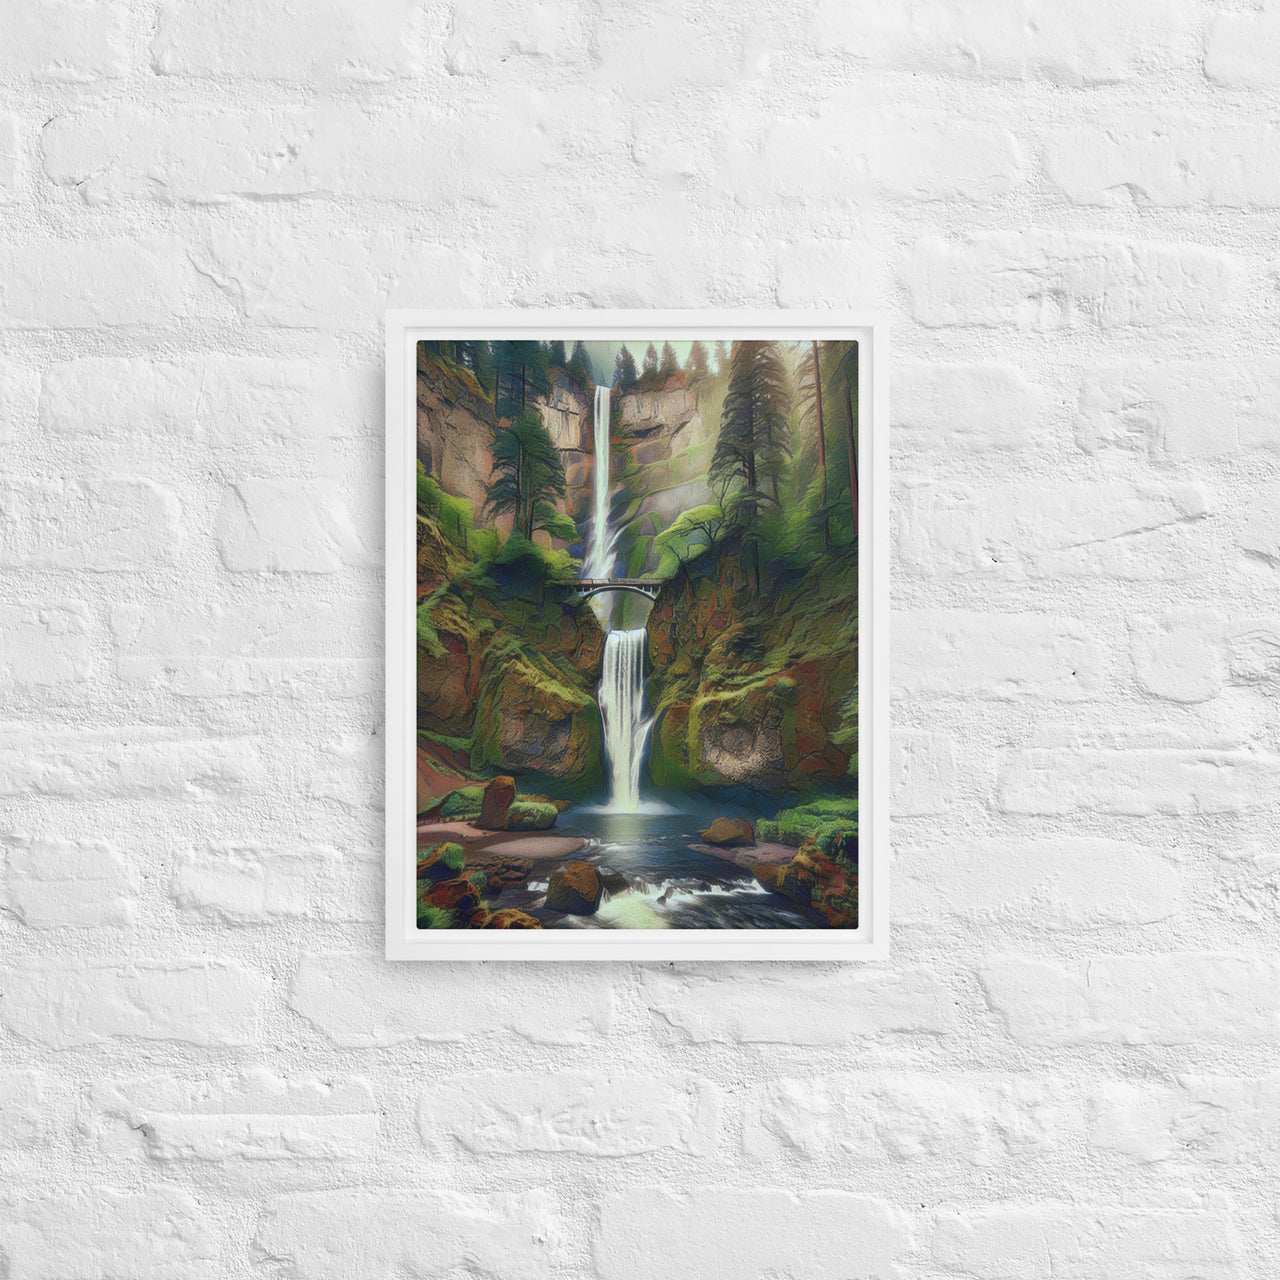 Multnomah Falls - Digital Art - Framed canvas - FREE SHIPPING